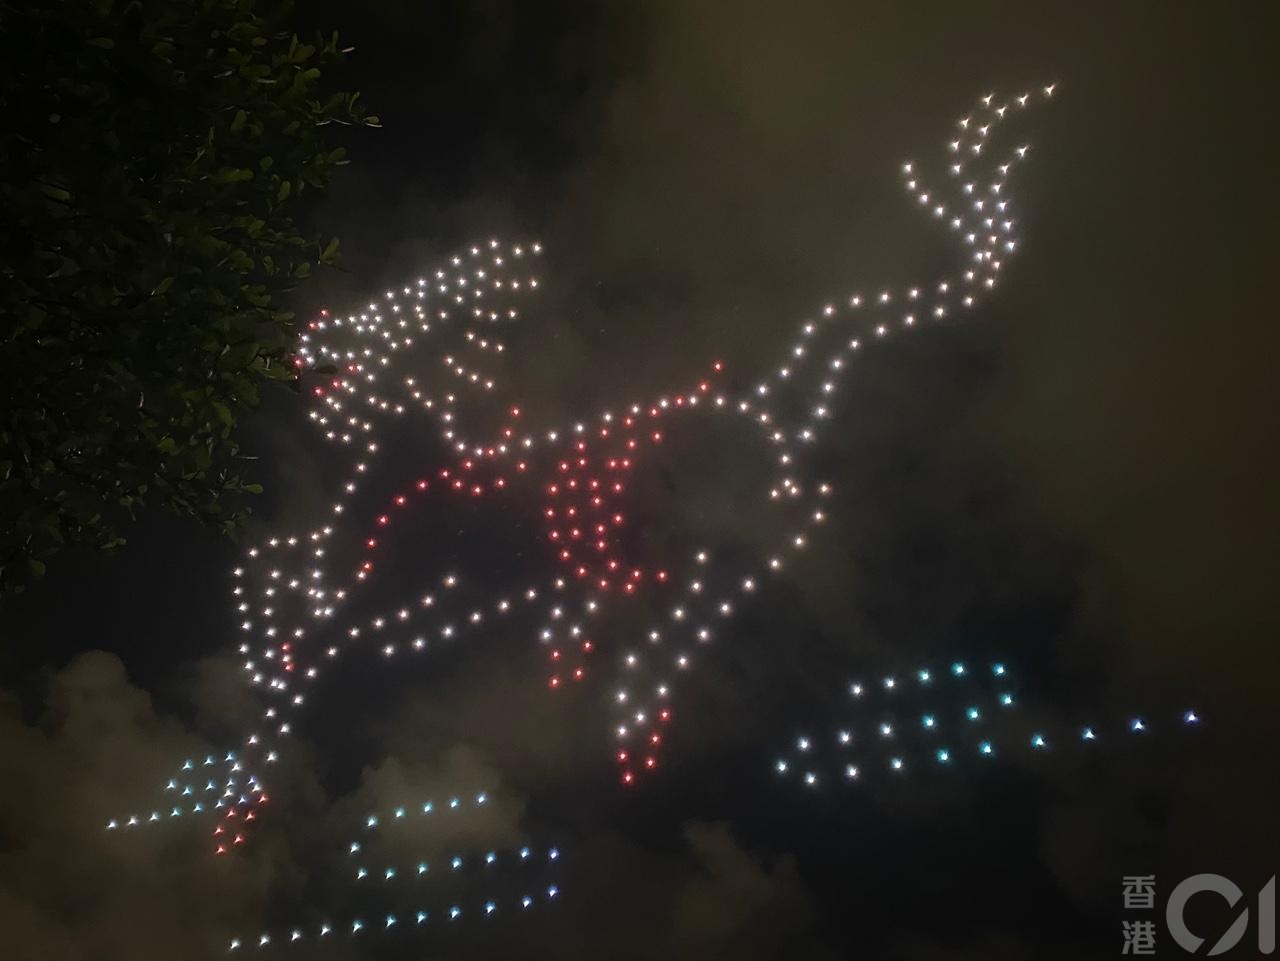 荃湾各界庆祝回归委员会于7月1日晚上8时50分上映「无人机汇演贺回归」，砌出不同图案。（余月明摄）